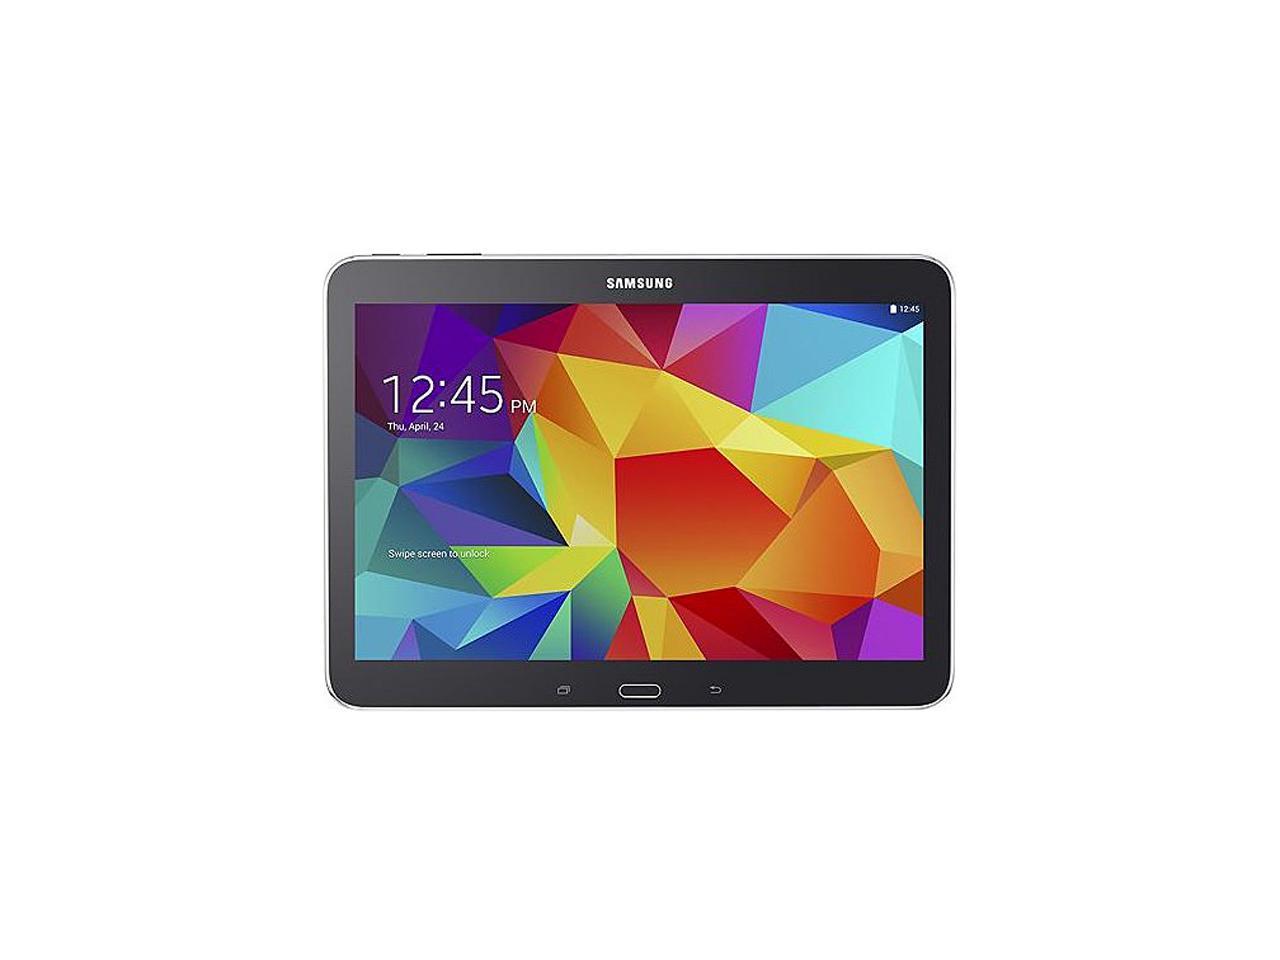 SAMSUNG Galaxy Tab 4 10.1 Quad Core Processor 1.20 GHz 1.5 GB Memory 16 GB Flash Storage 10.1